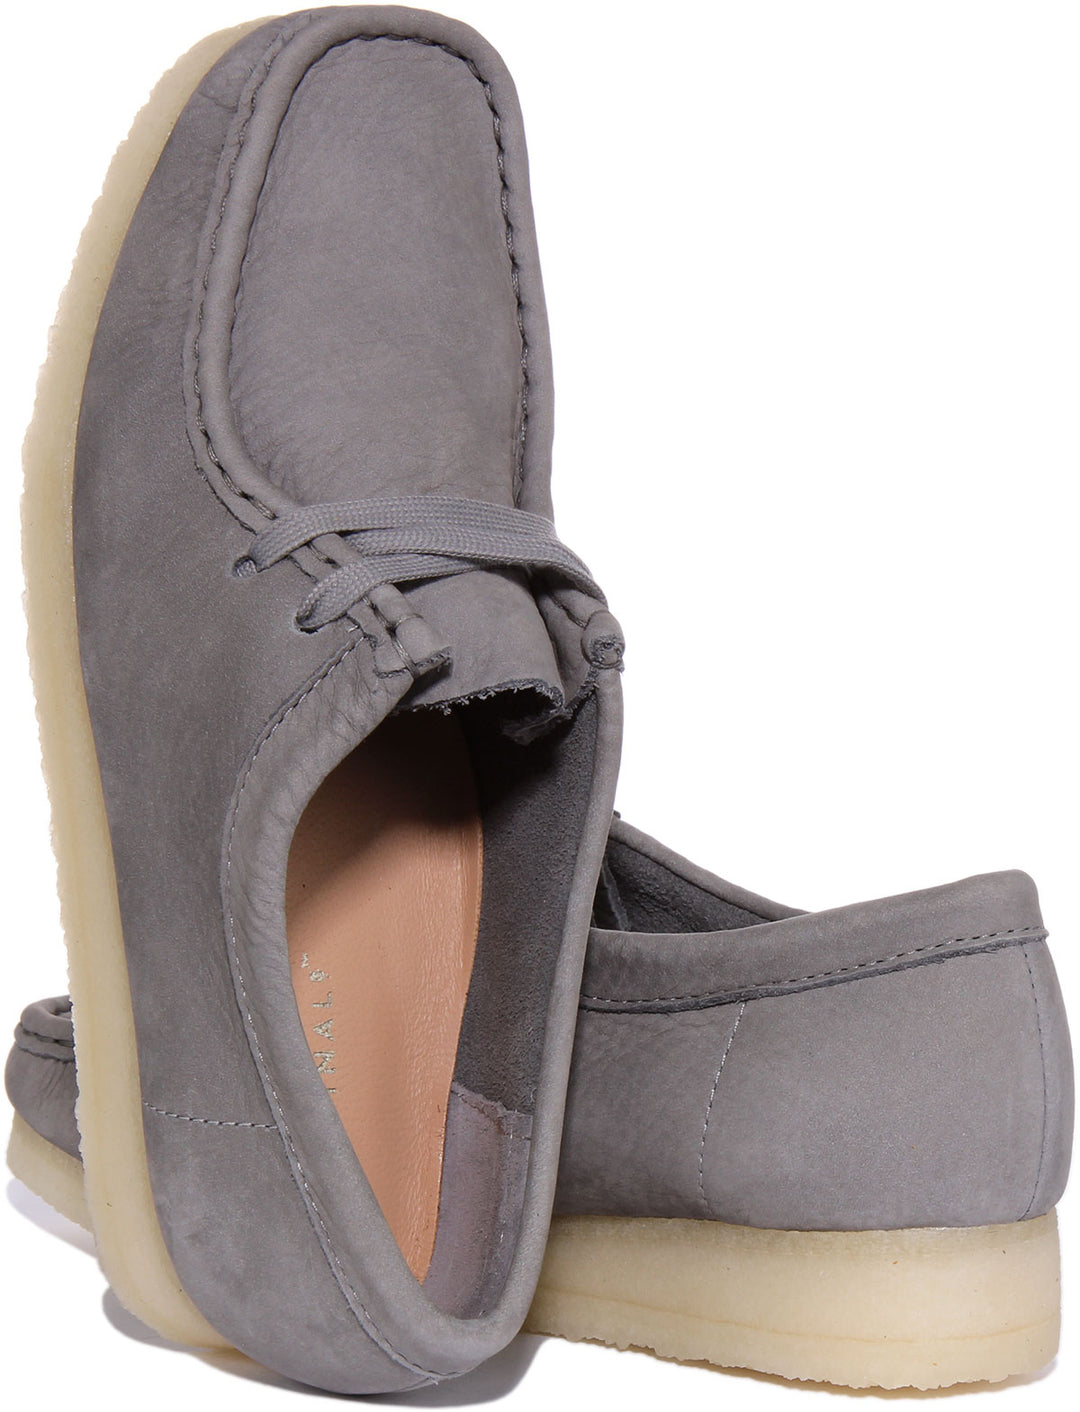 Clarks Originals Wallabee Zapatos con cordones de nobuk para mujer en gris